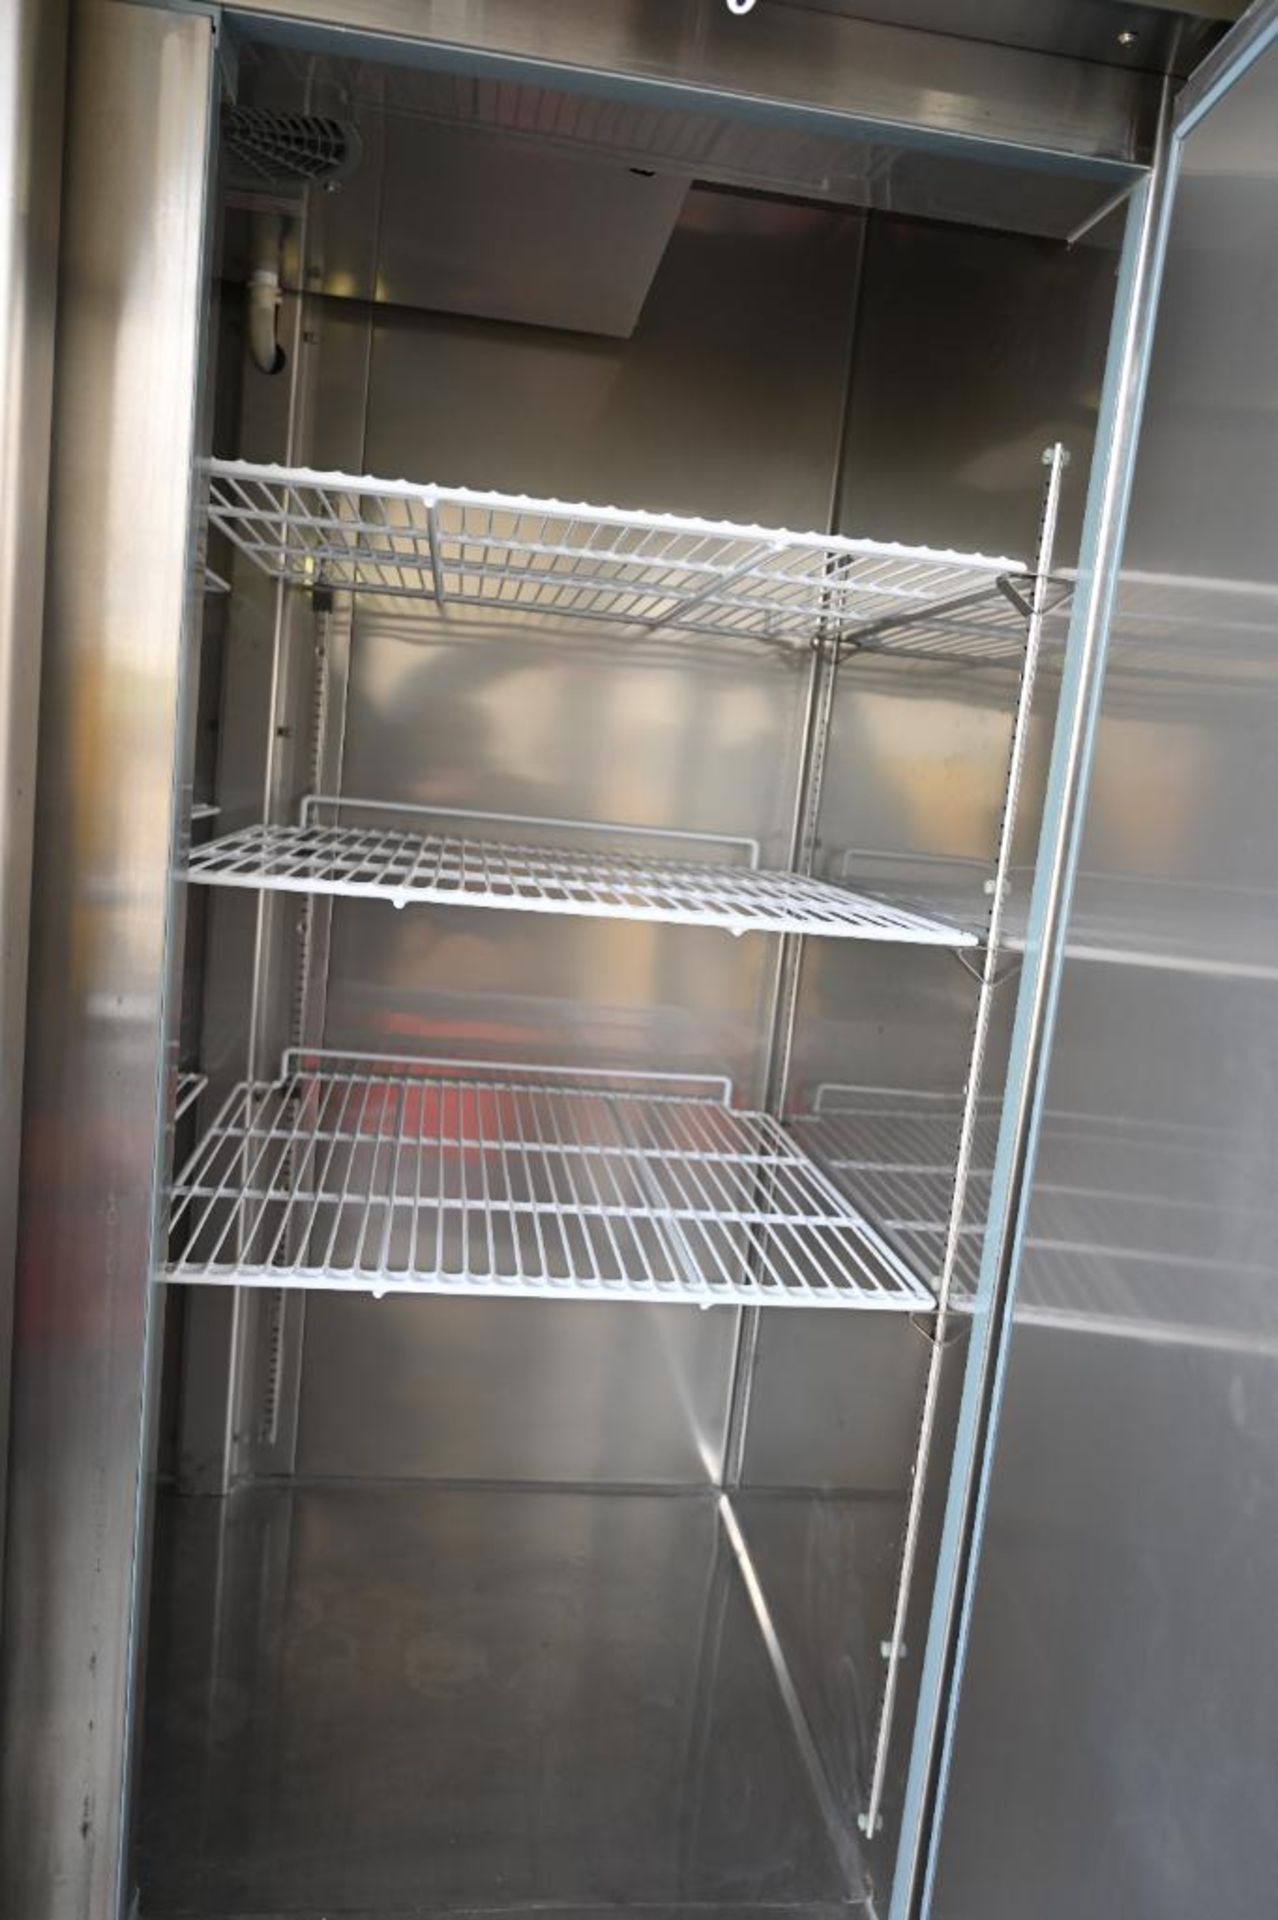 Empura model EKB54R Stainless Commercial Refrigerator - Image 8 of 14